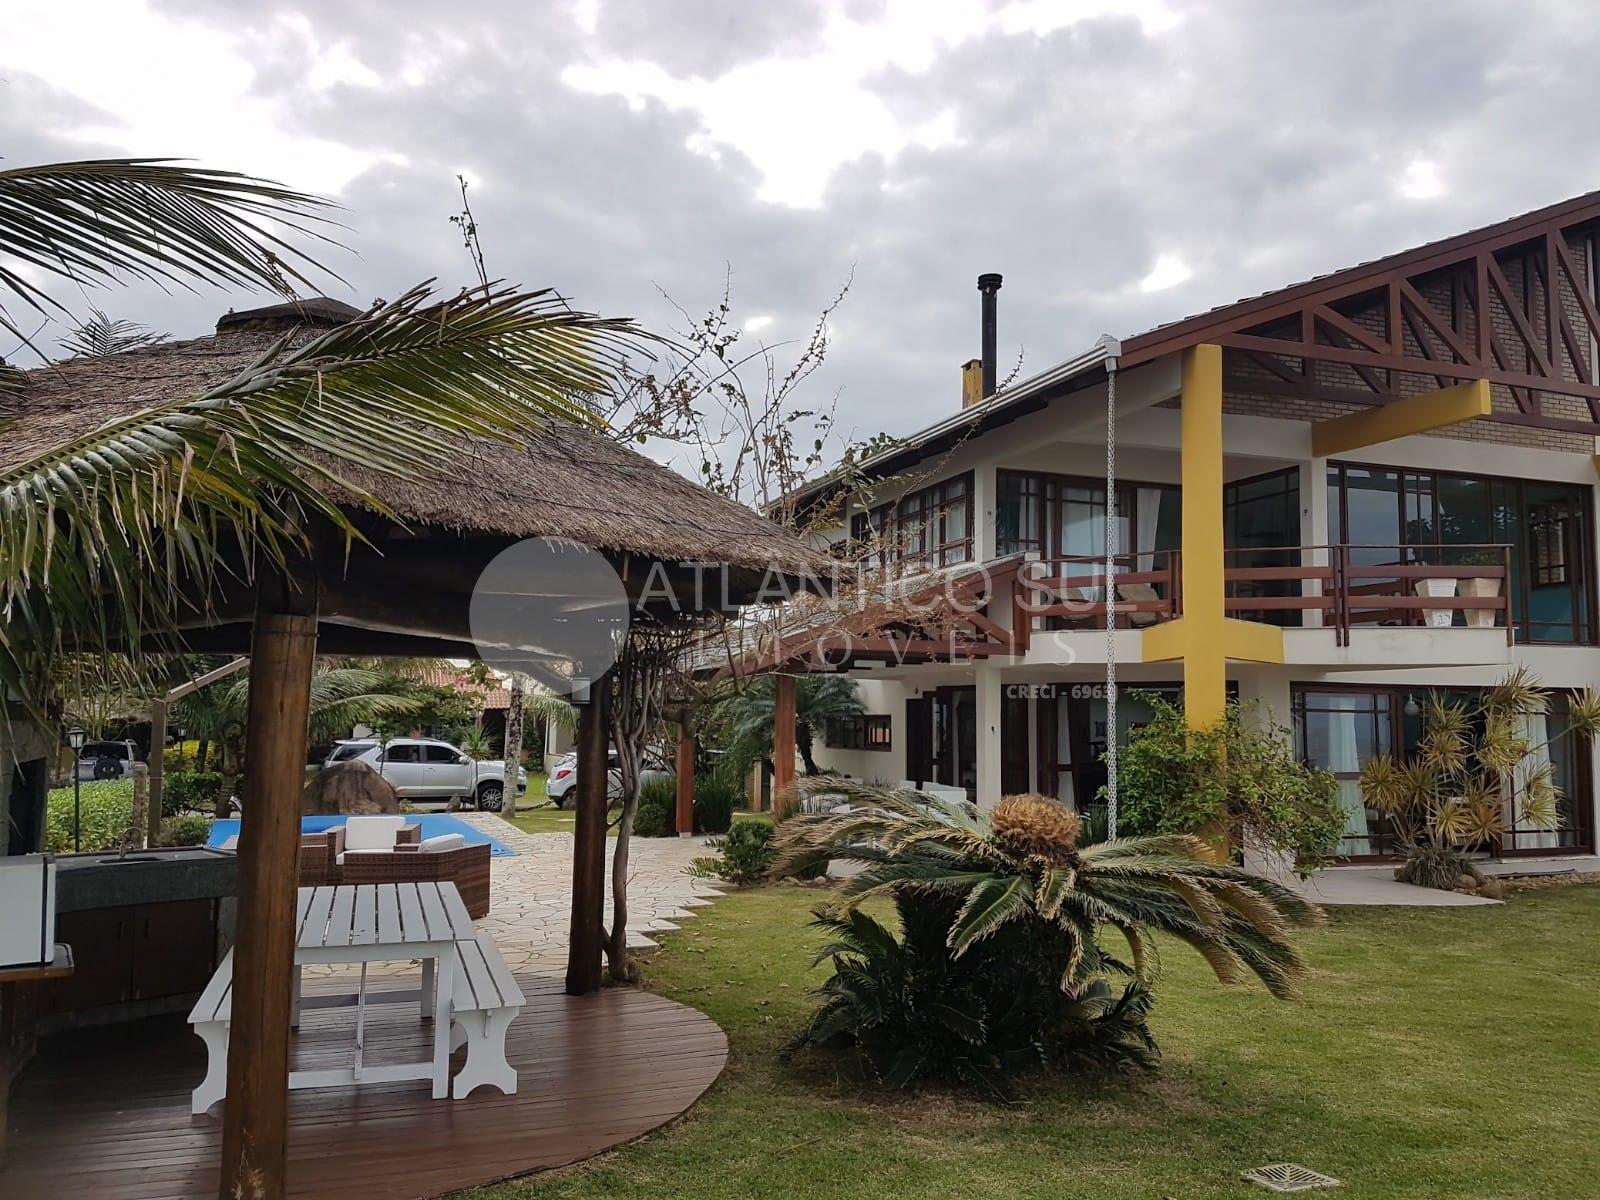 Ótima casa à venda em ITAPOÁ - SC - De frente para o mar!